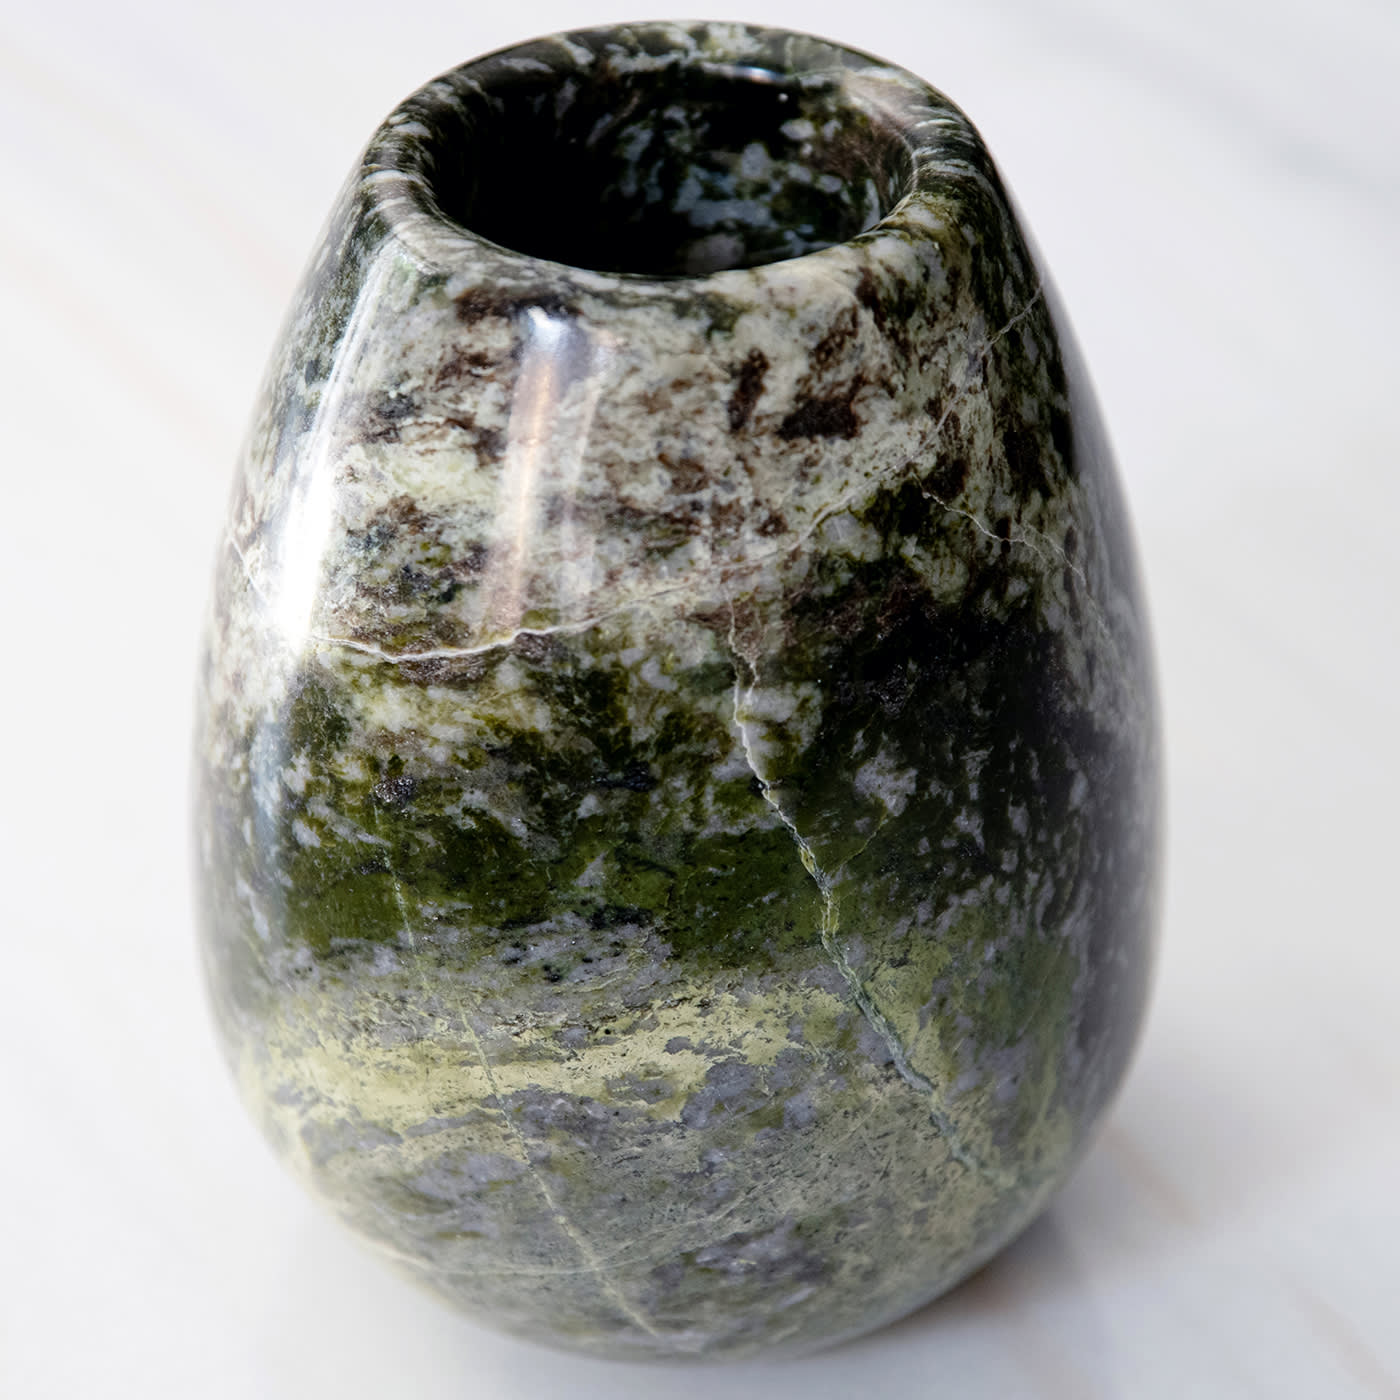 Irish Green Vase by Franco Albini - Officina Della Scala